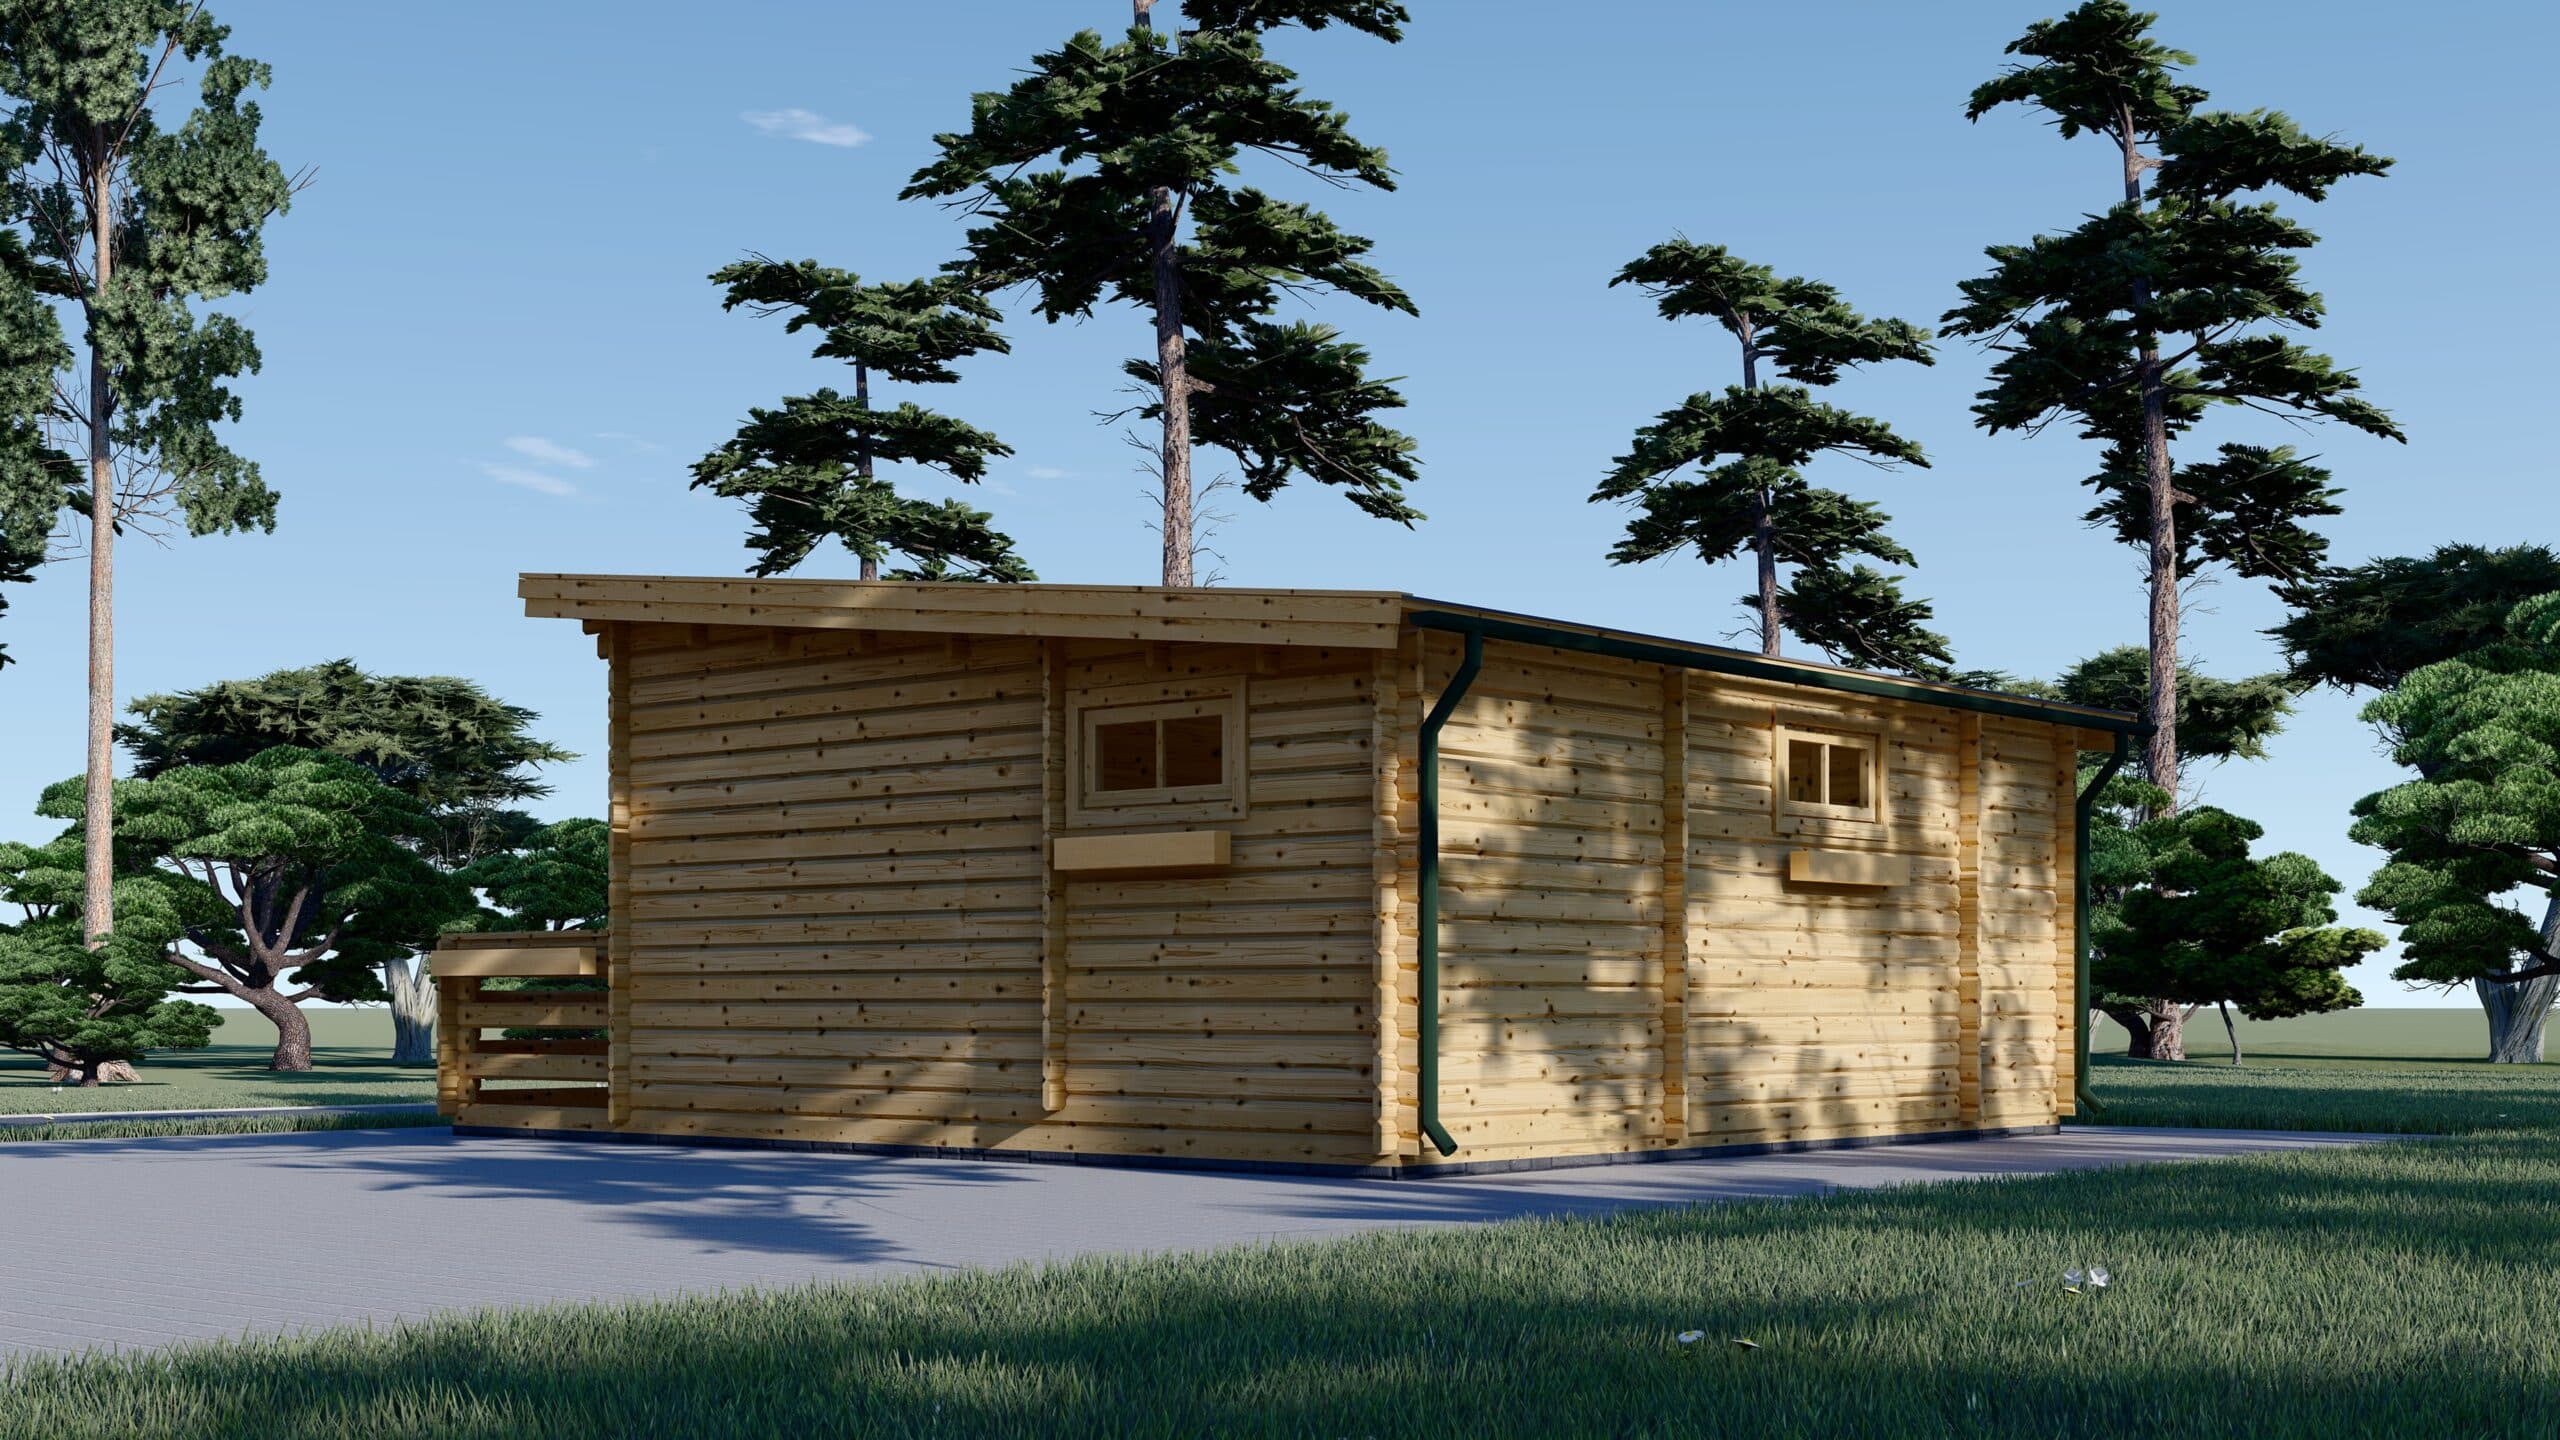 Chalet en bois avec terrasse ALTURA (44 mm), 31 m² + 8 m²